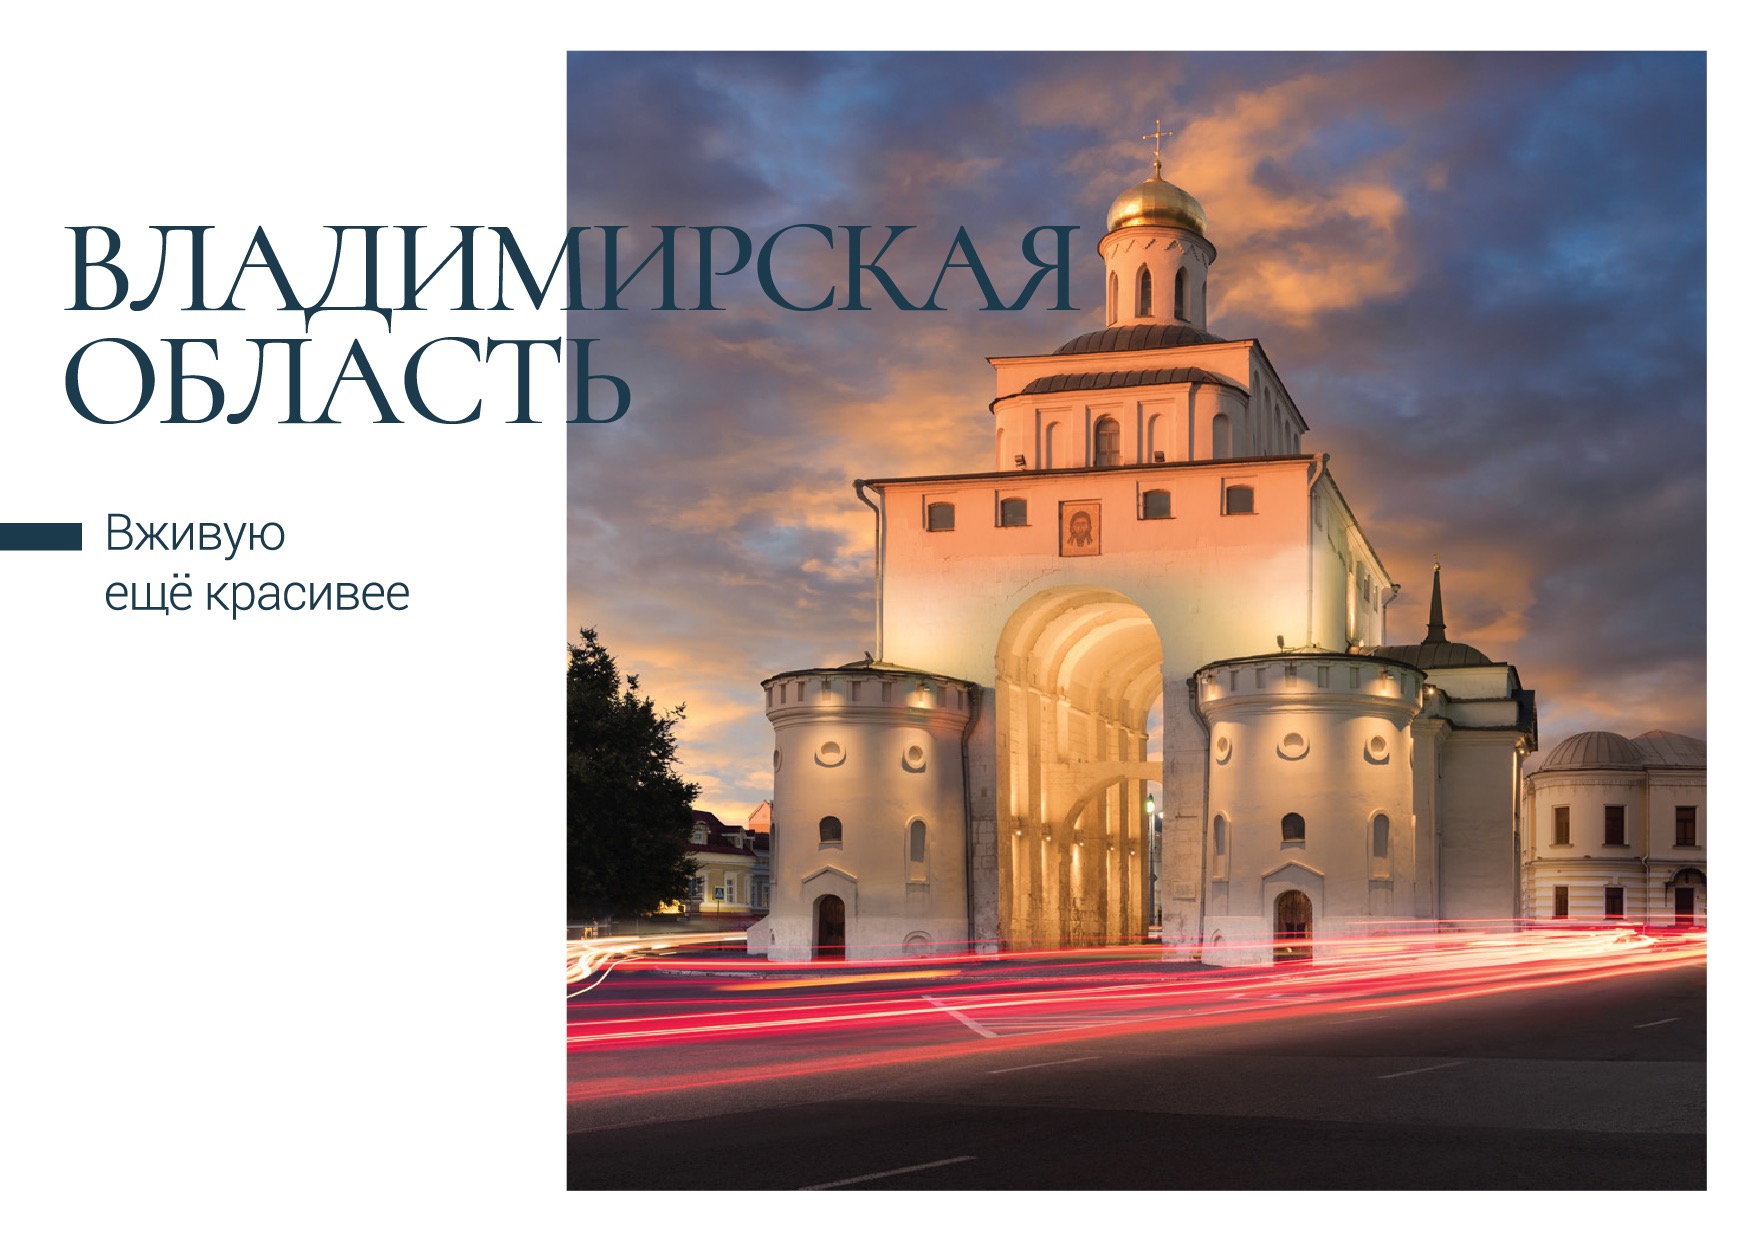 Почта России выпустила открытки с красивыми видами Владимирской области